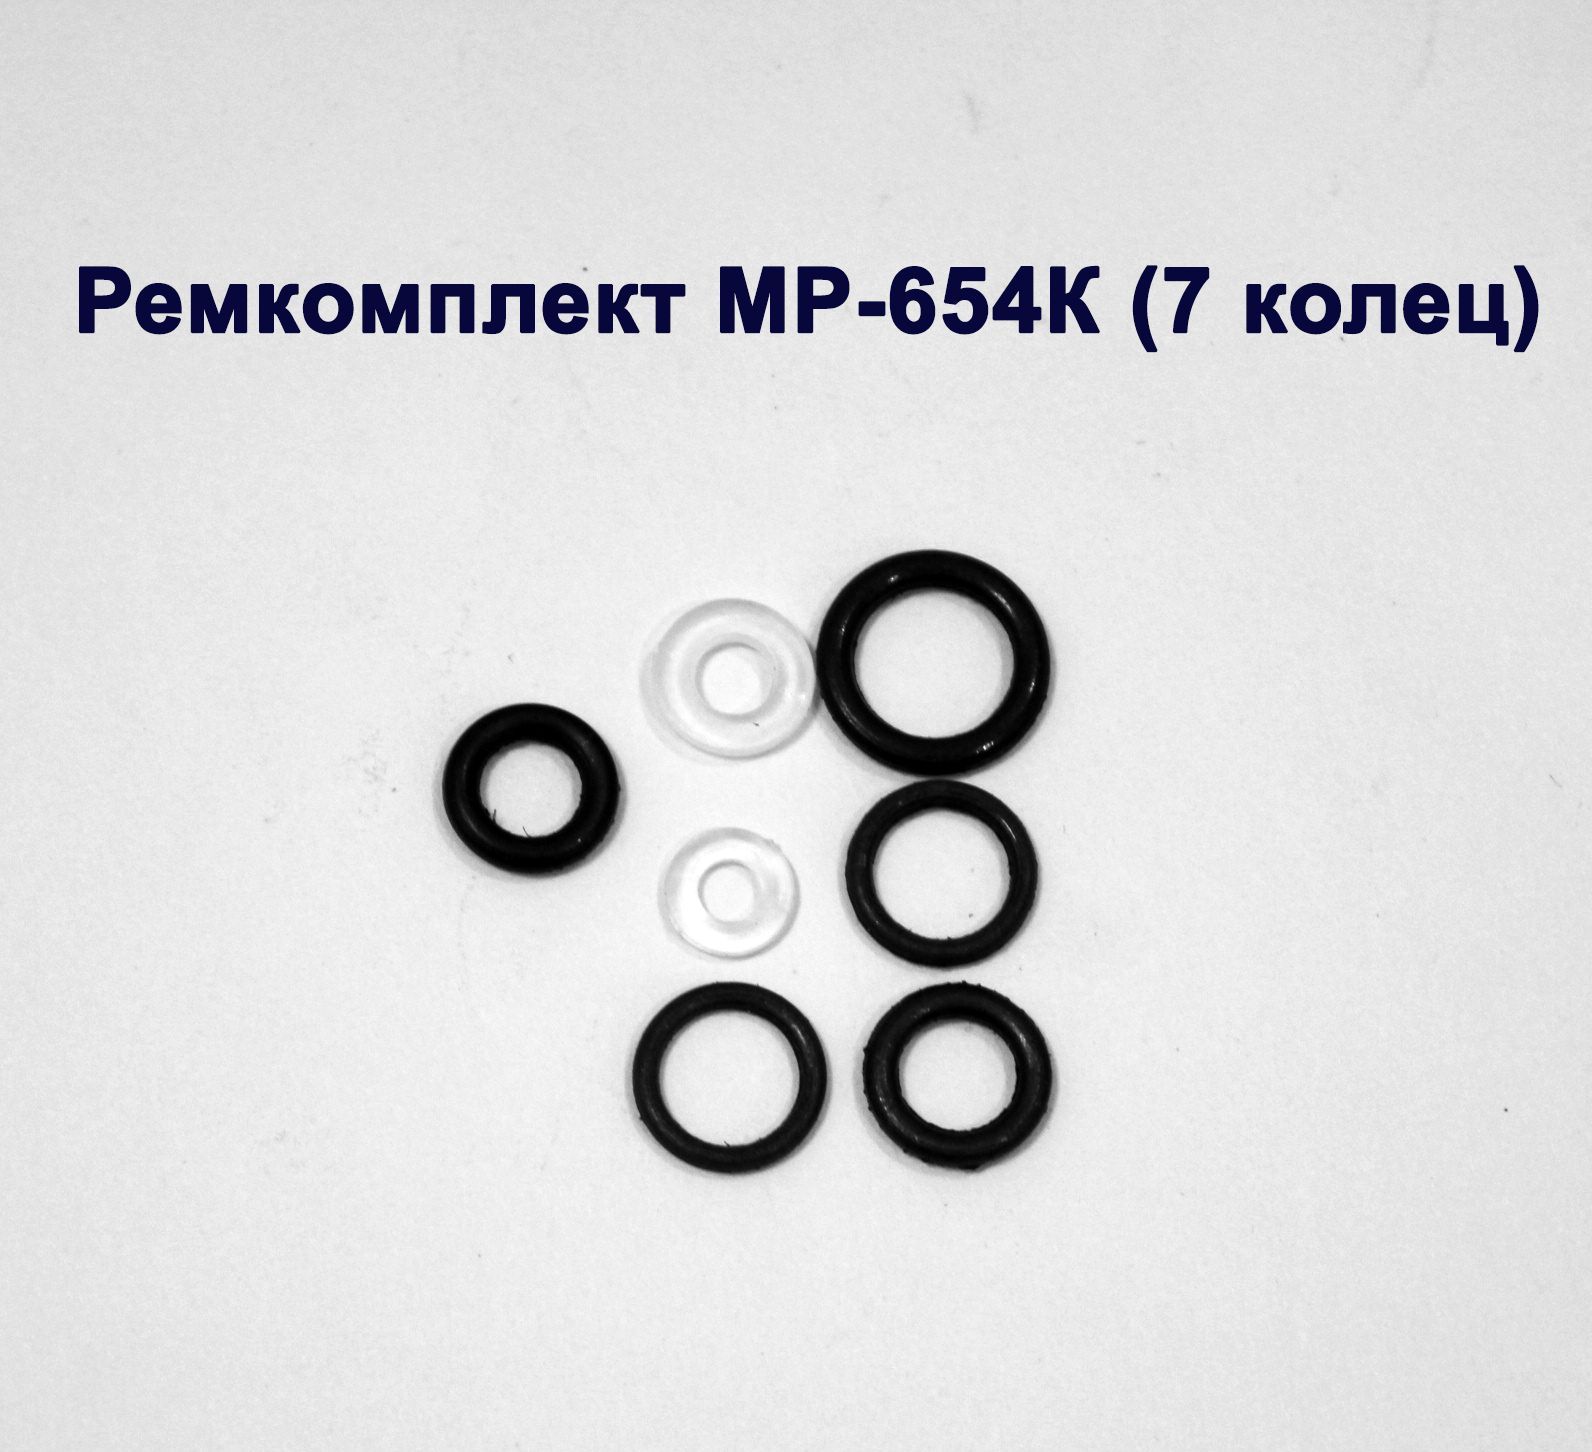 Ремонтный комплект для МР-654К (7 колец) - купить с доставкой по выгоднымценам в интернет-магазине OZON (922855511)